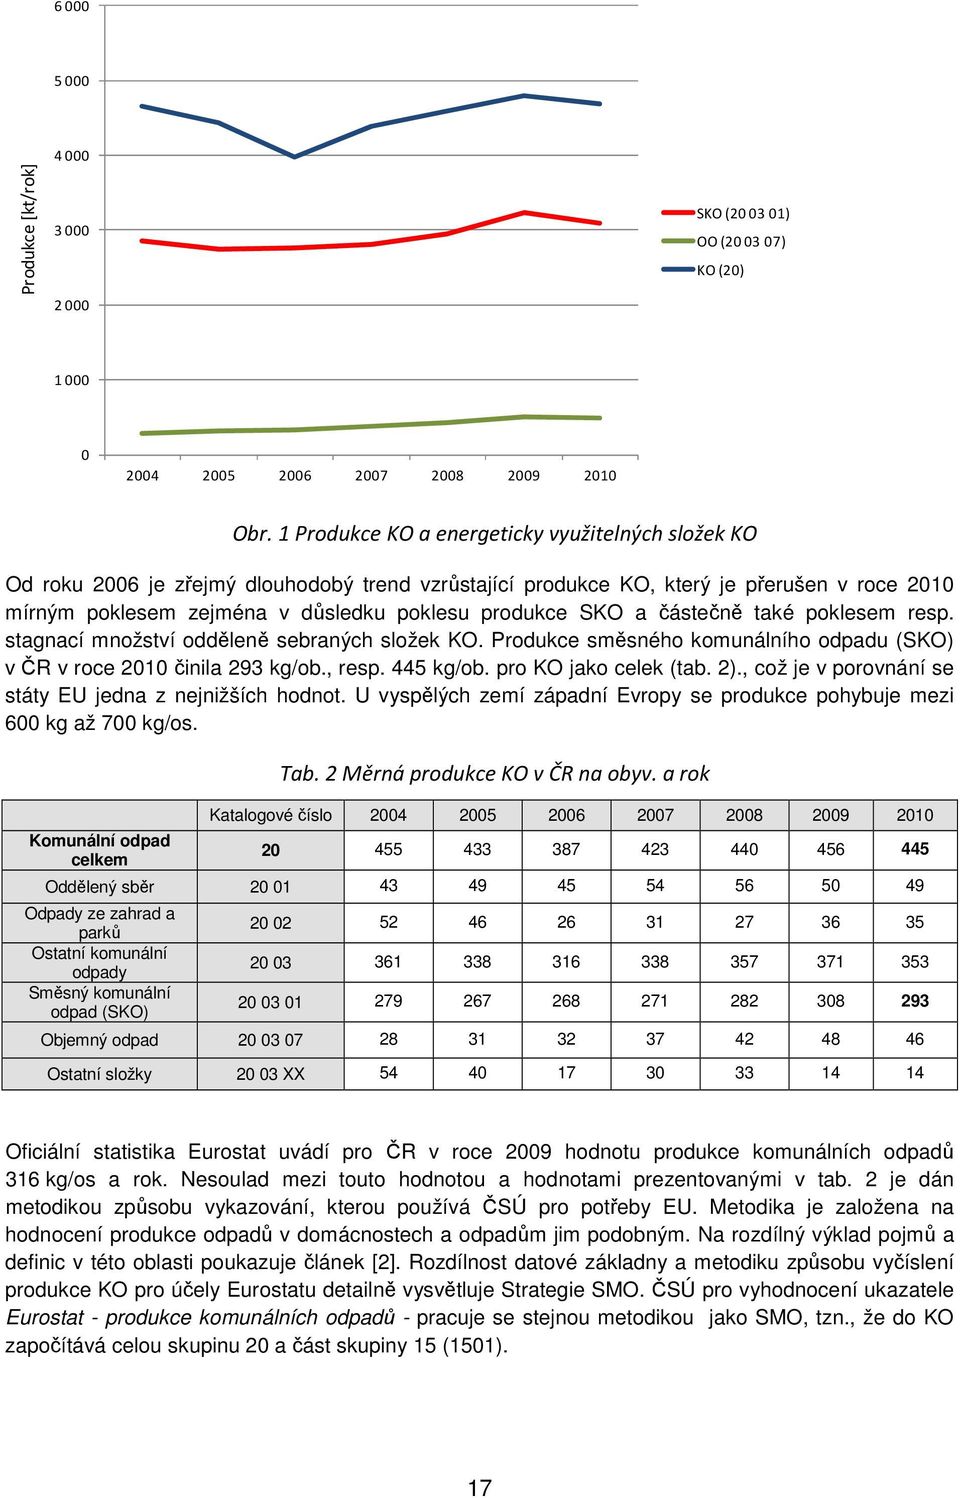 SKO a částečně také poklesem resp. stagnací množství odděleně sebraných složek KO. Produkce směsného komunálního odpadu (SKO) v ČR v roce 2010 činila 293 kg/ob., resp. 445 kg/ob.